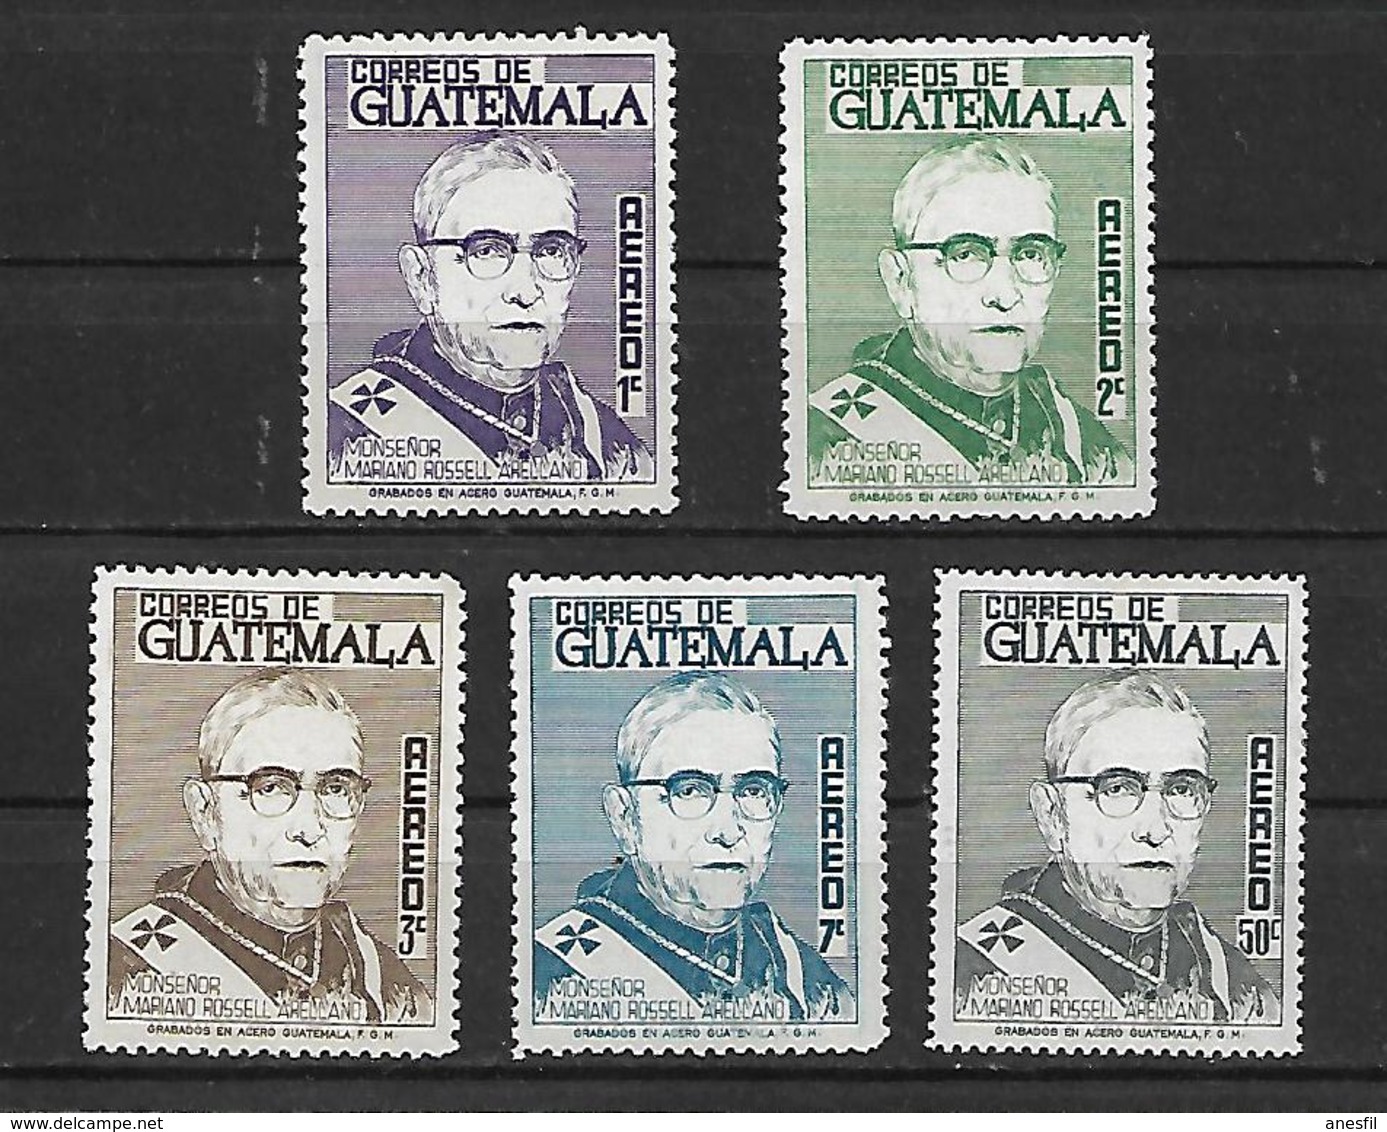 Guatemala, 1966 - Guatemala